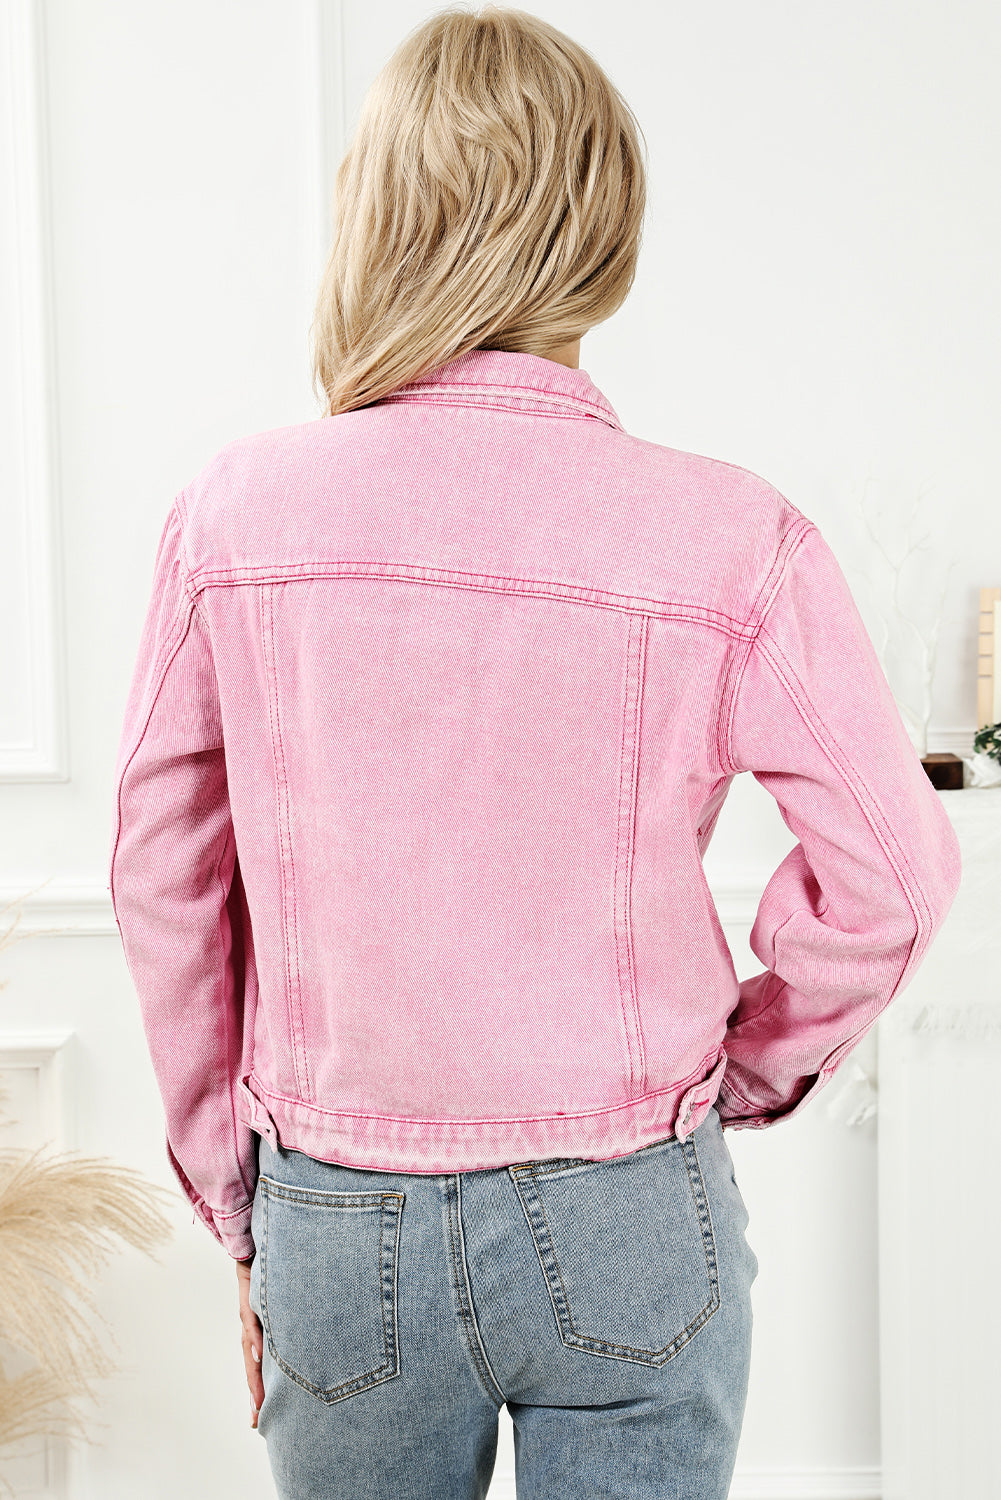 Rosafarbene Jeansjacke mit Knopfleiste und Pattentasche in Acid-Waschung